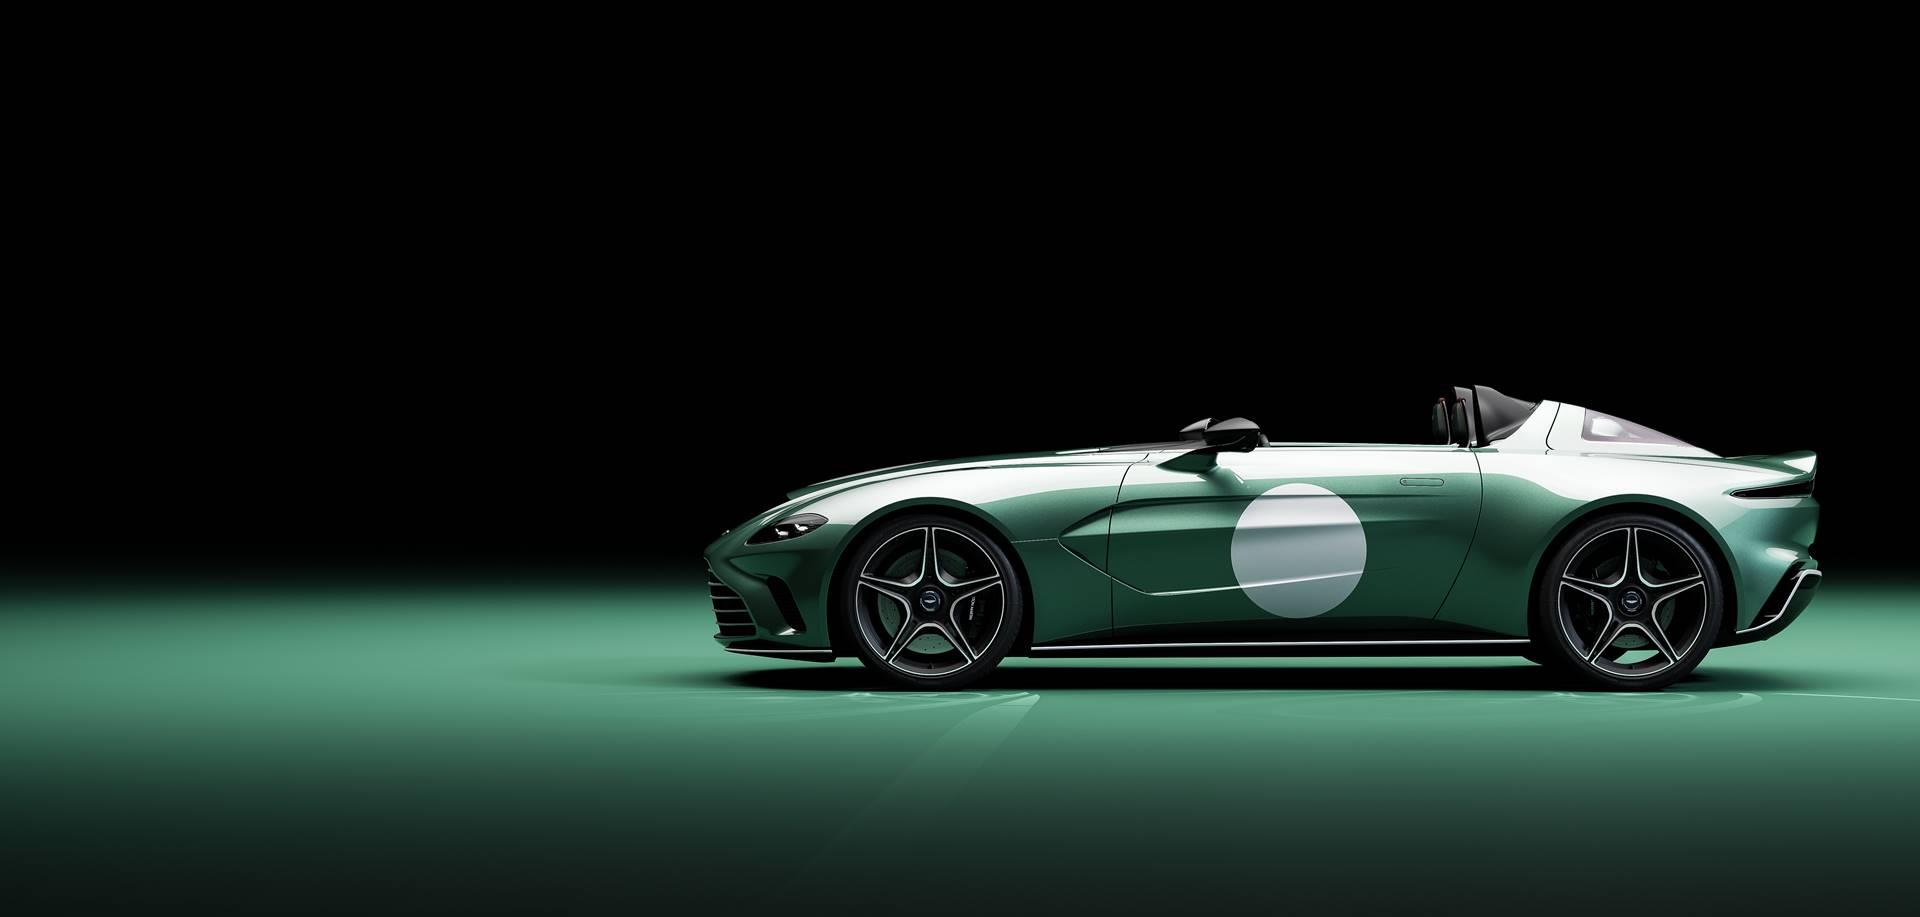 Aston Martin V12 Speedster News and Information - .com